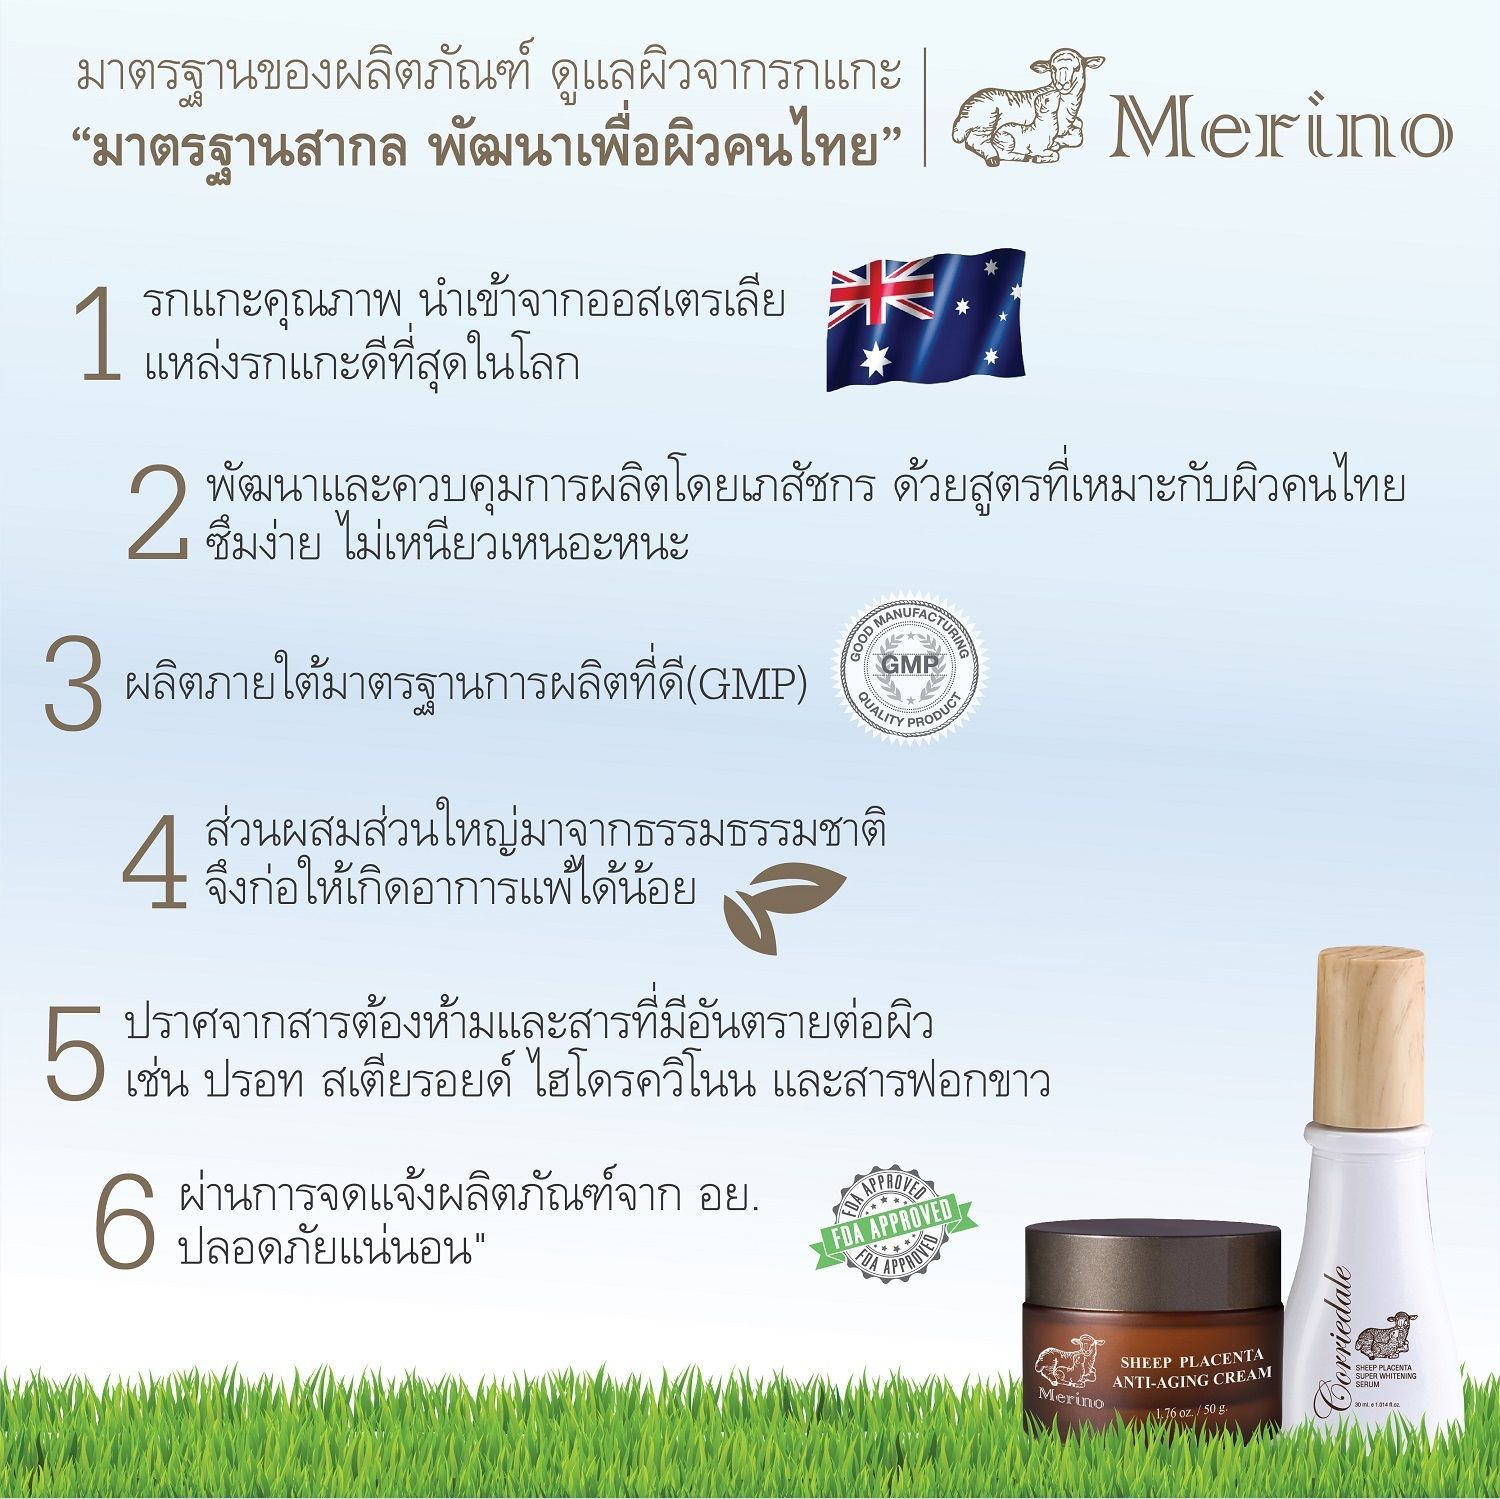 ผลิตภัณฑ์รกแกะ Merino มาตรฐานสากล พัฒนาเพื่อผิวคนไทย